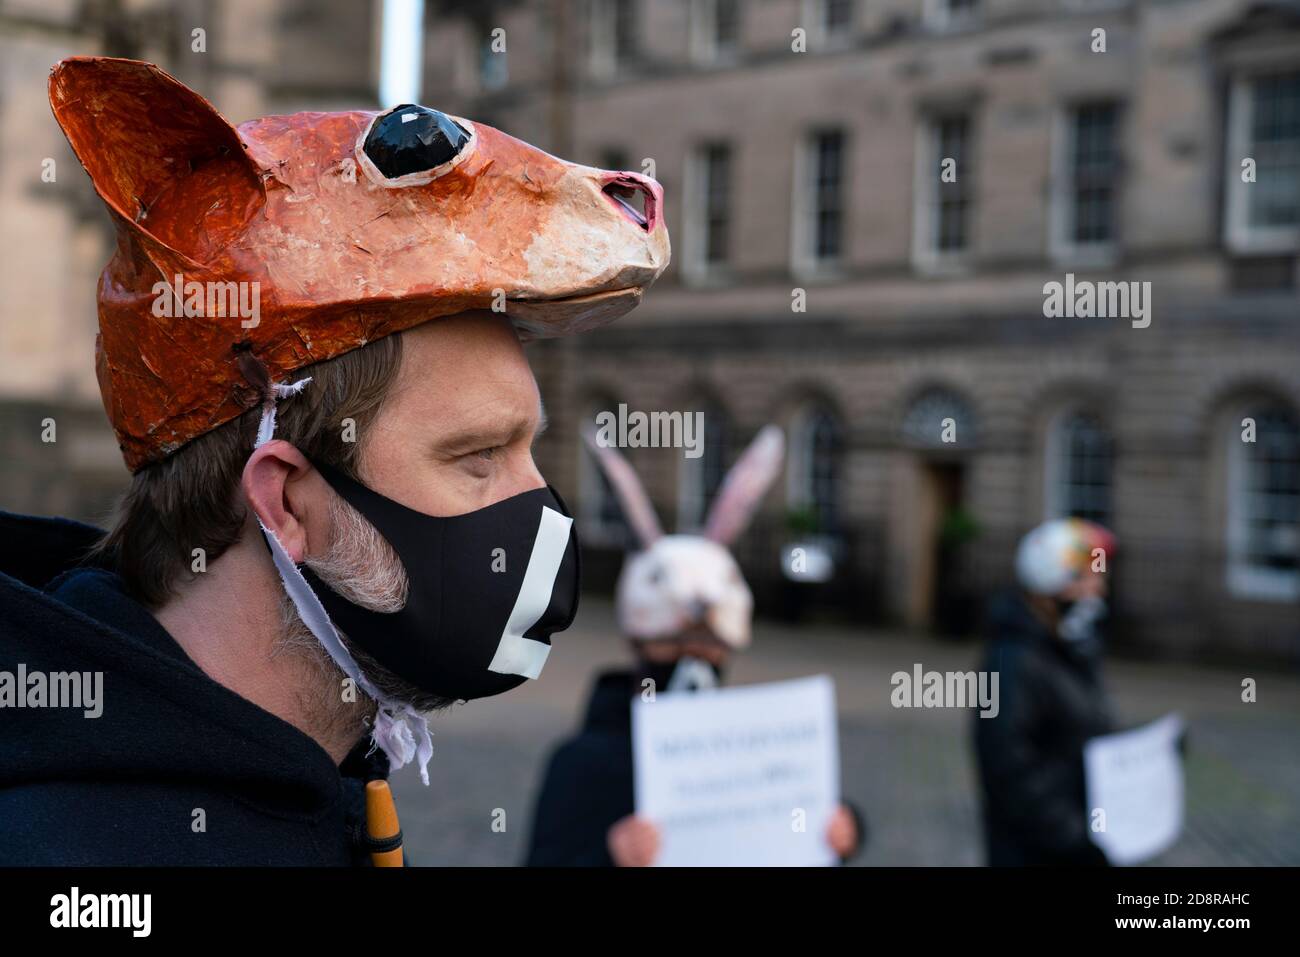 Extinction manifestation de la rébellion mettant en évidence le déclin des espèces sauvages à Édimbourg, en Écosse, au Royaume-Uni Banque D'Images